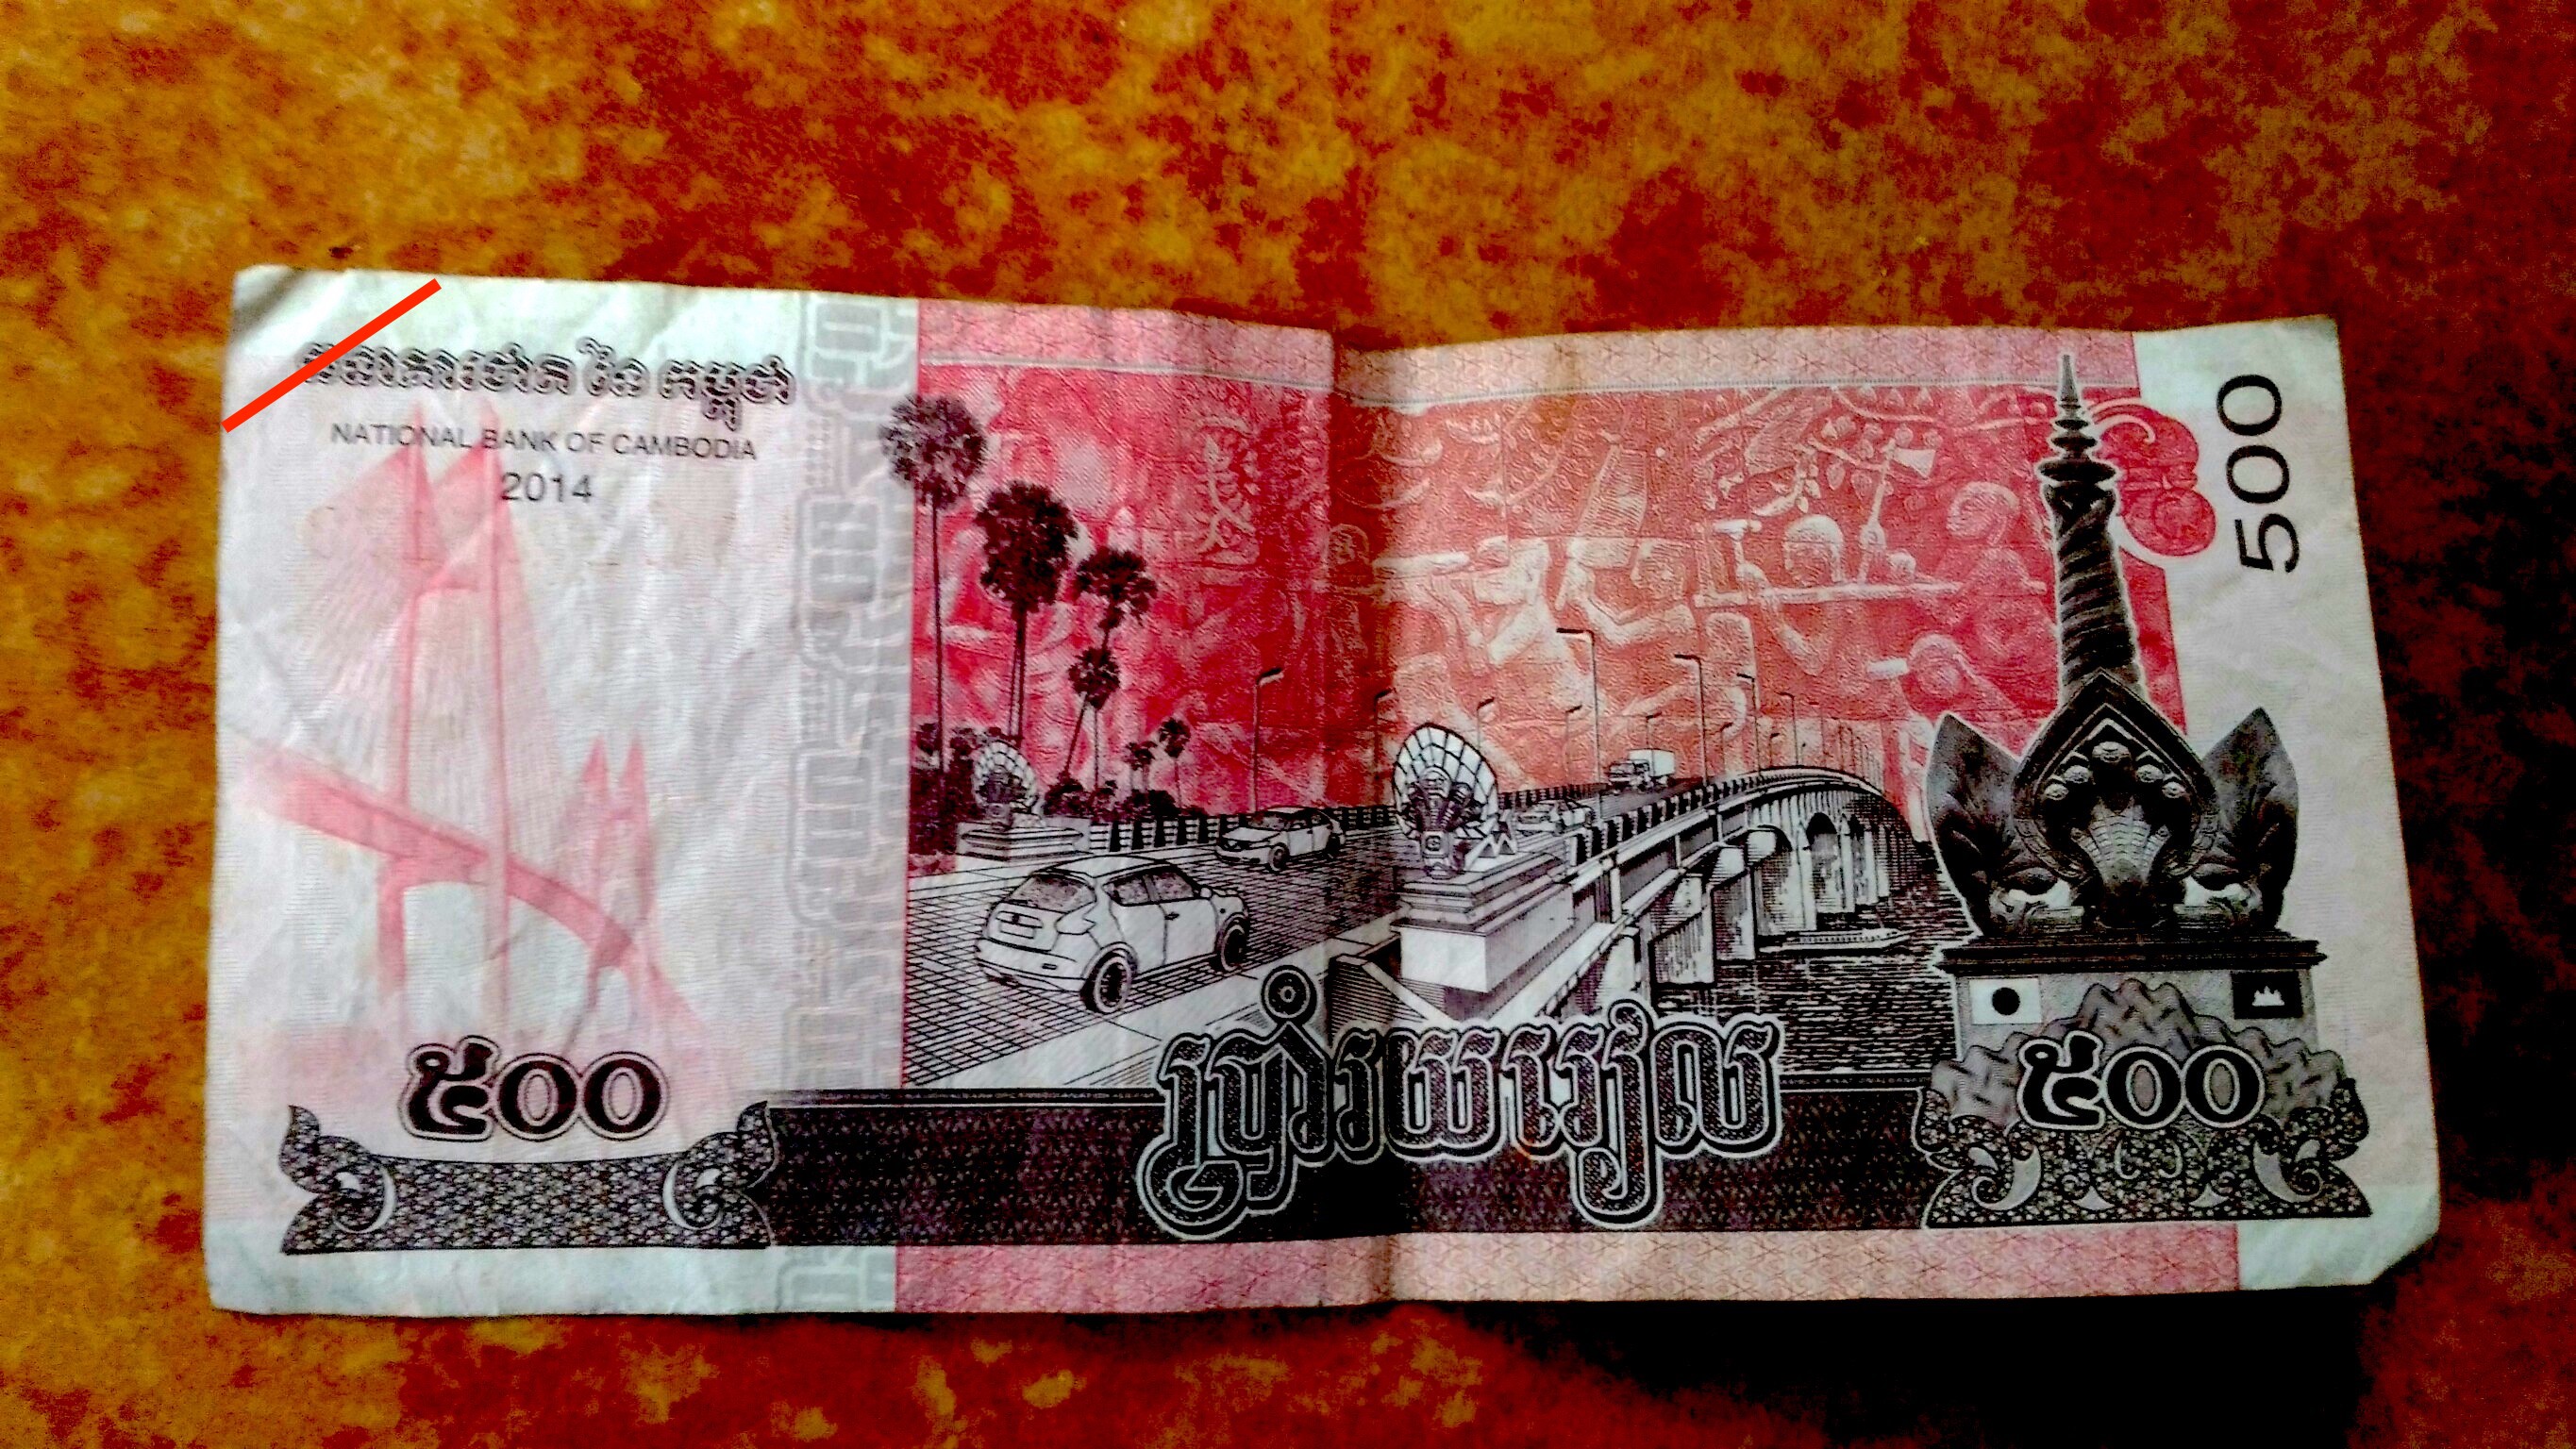 カンボジアの通貨 Riel リエル の紹介 まさとぶろぐ カンボジア